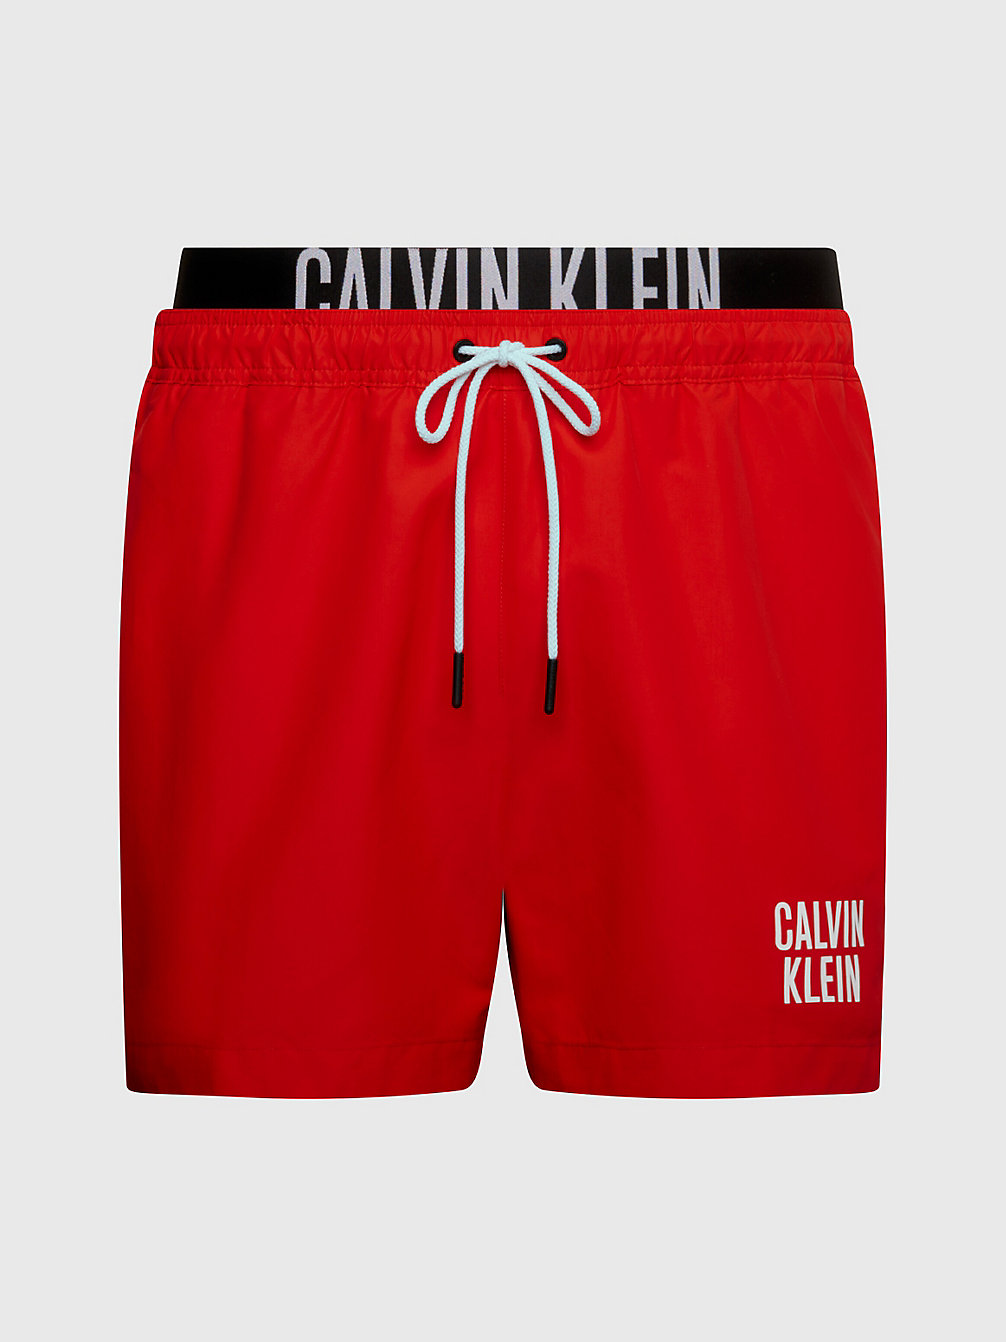 Men's Swim Shorts & Trunks Calvin